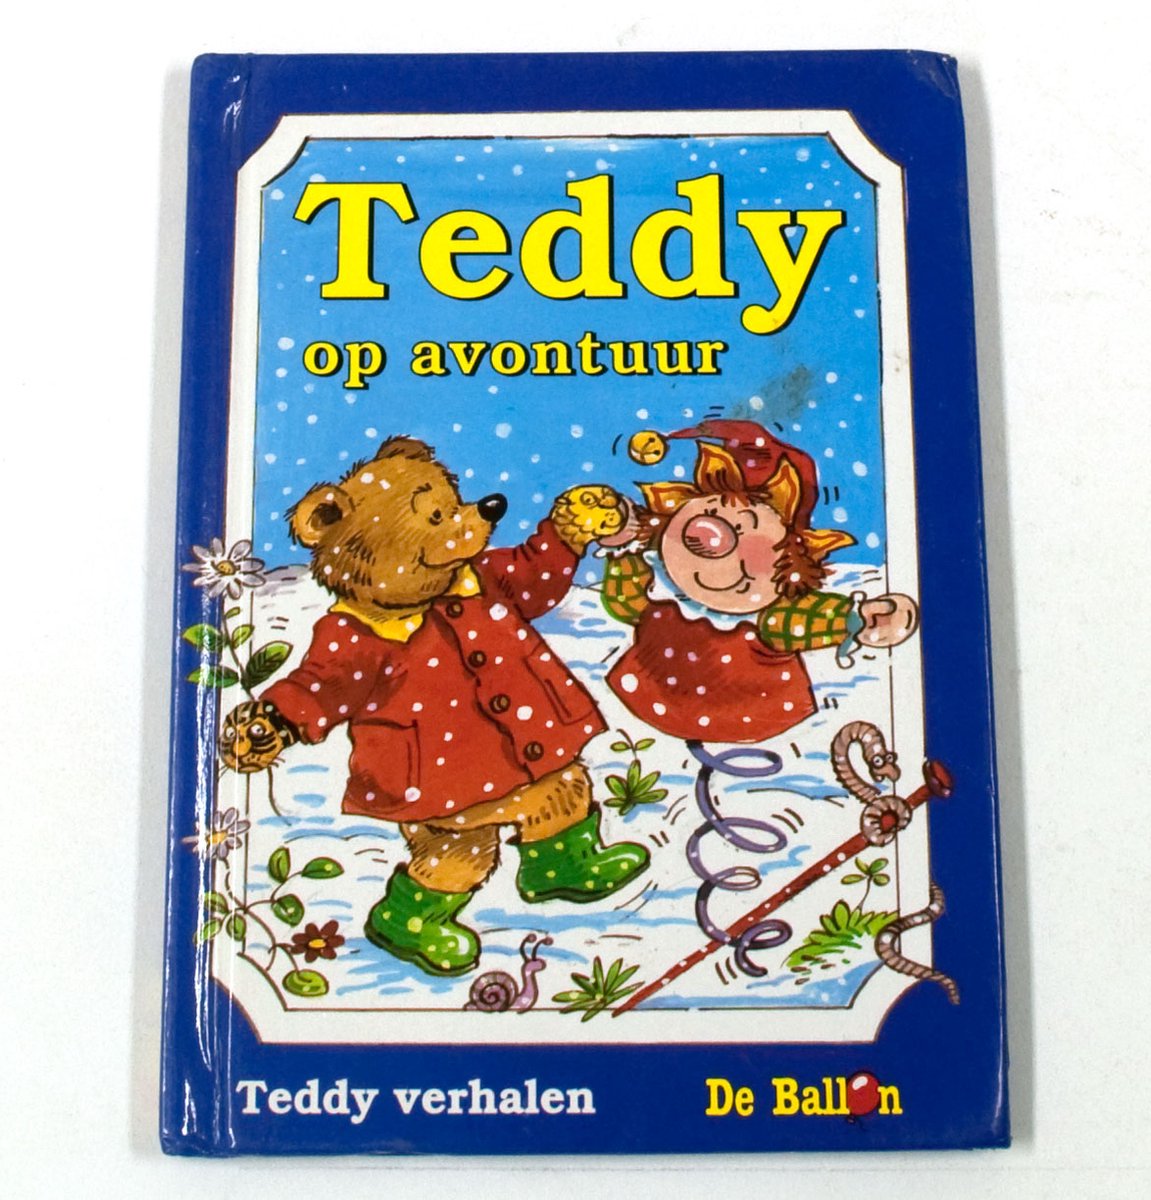 Teddy op avontuur - Teddy verhalen - De Ballon